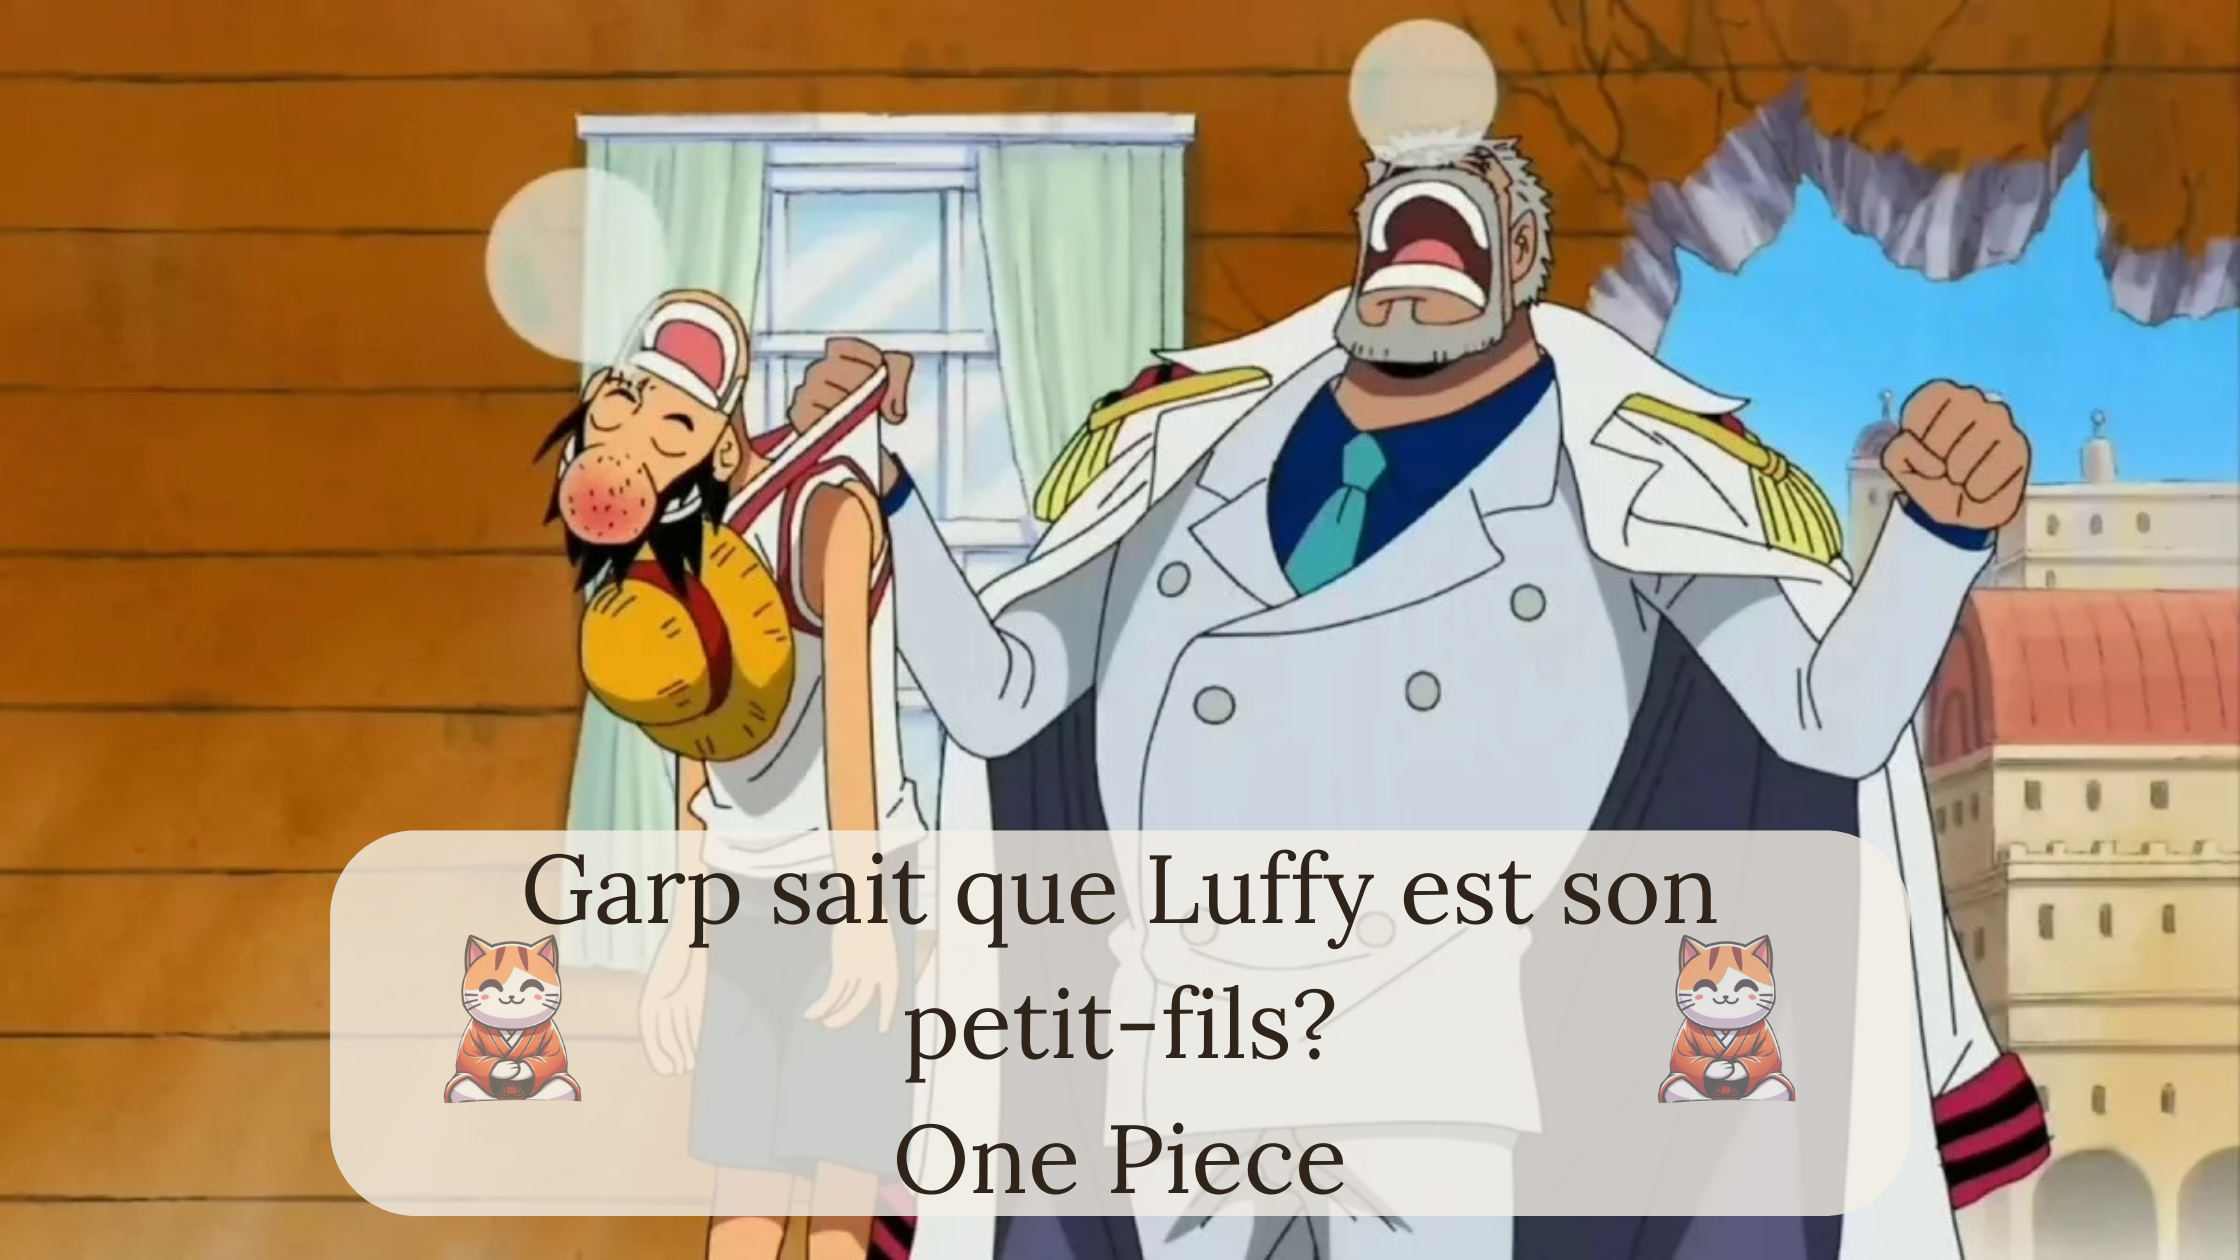 Garp sait que Luffy est son petit-fils?